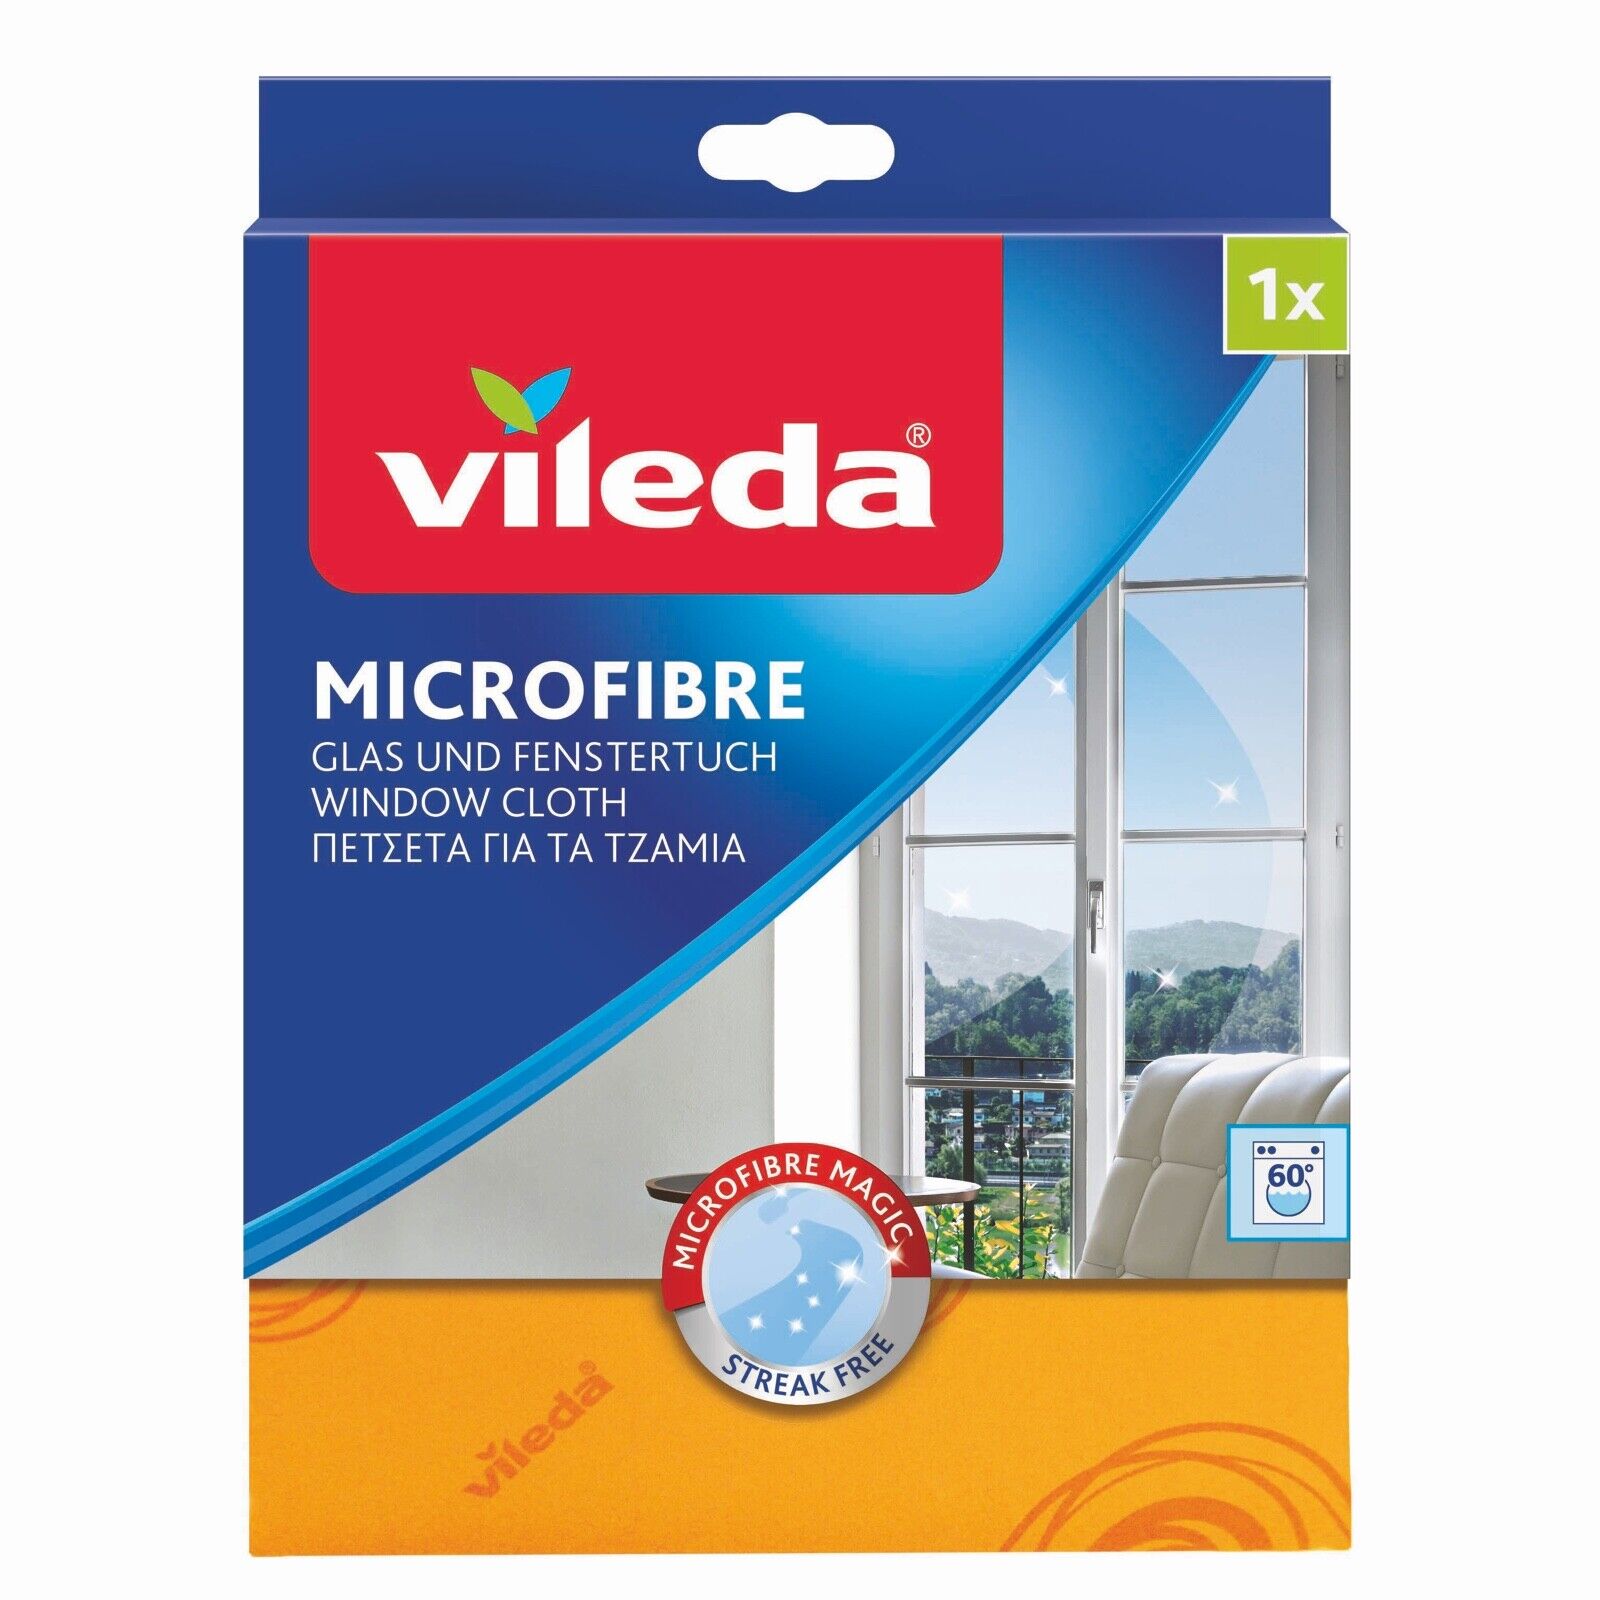 Das Bild zeigt das verpackte Vileda Fenstertuch Microfibre